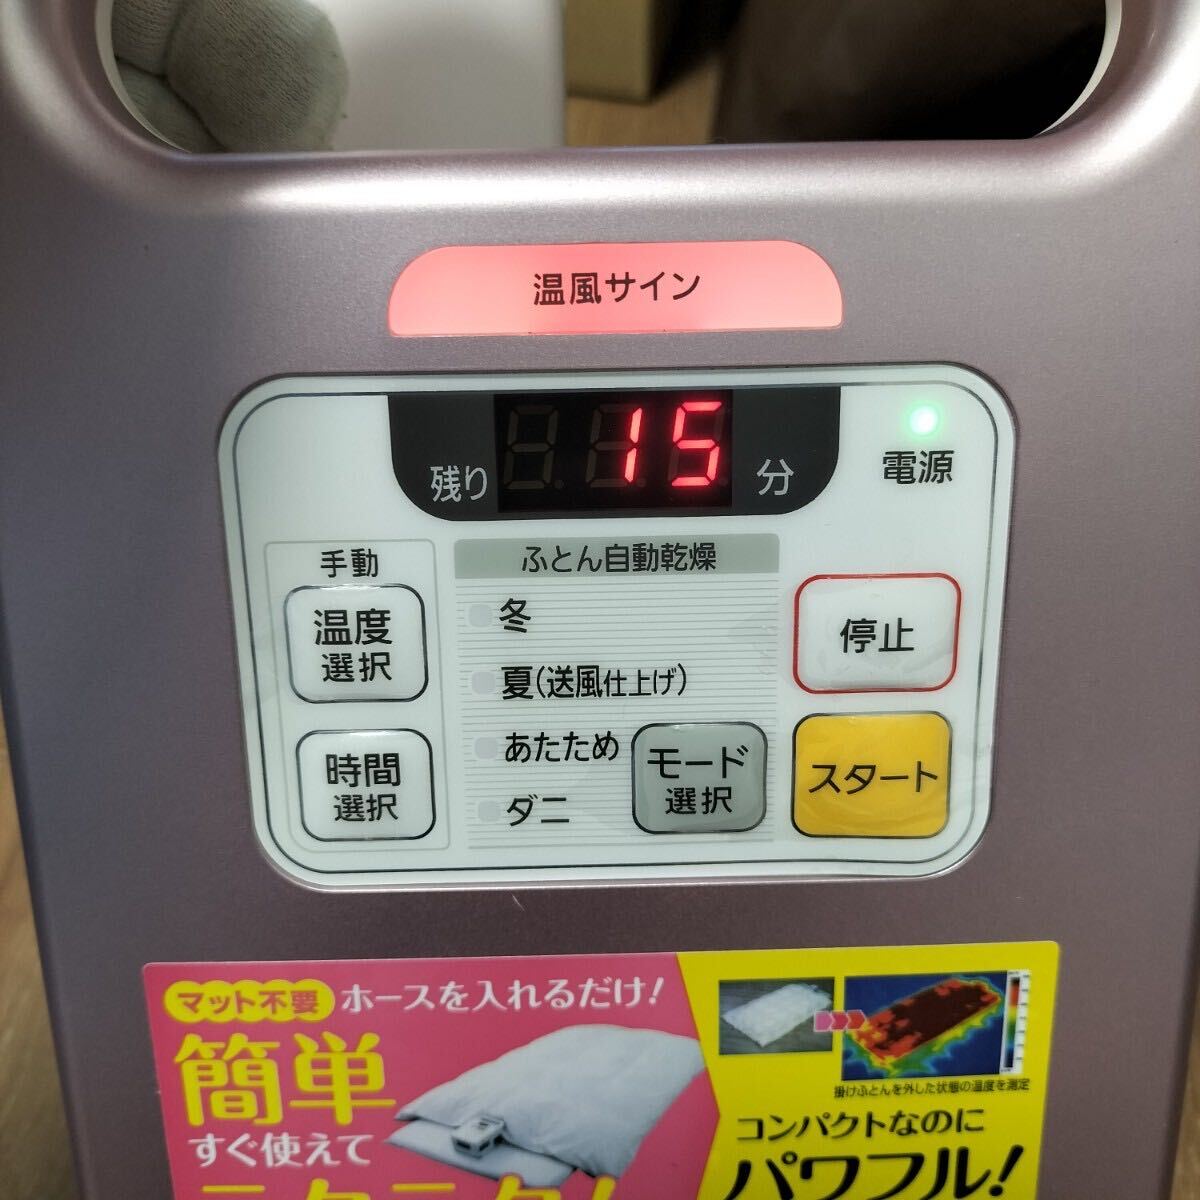 5-23 IRIS OHYAMA Iris o-yama futon сушильная машина машина для просушивания футона бытовая техника FK-C1-P обувь сухой с принадлежностями . металлик розовый 